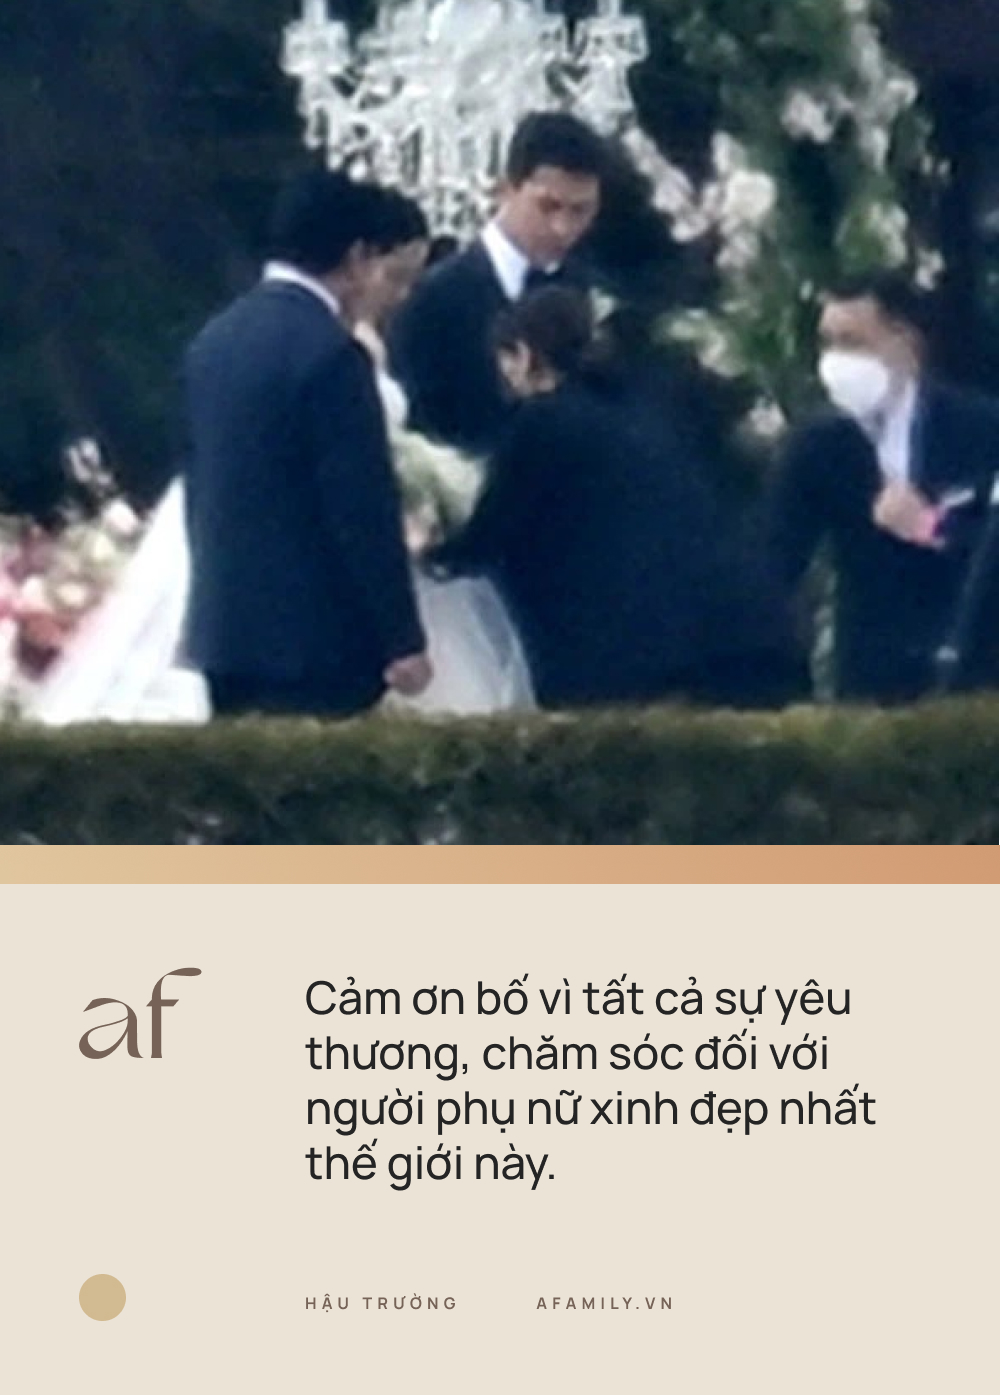 Sự thật lời nhắn nhủ giữa Hyun Bin và bố vợ trong đám cưới thế kỷ: Không có ngôn tình, tất cả chỉ là FAKE!-2